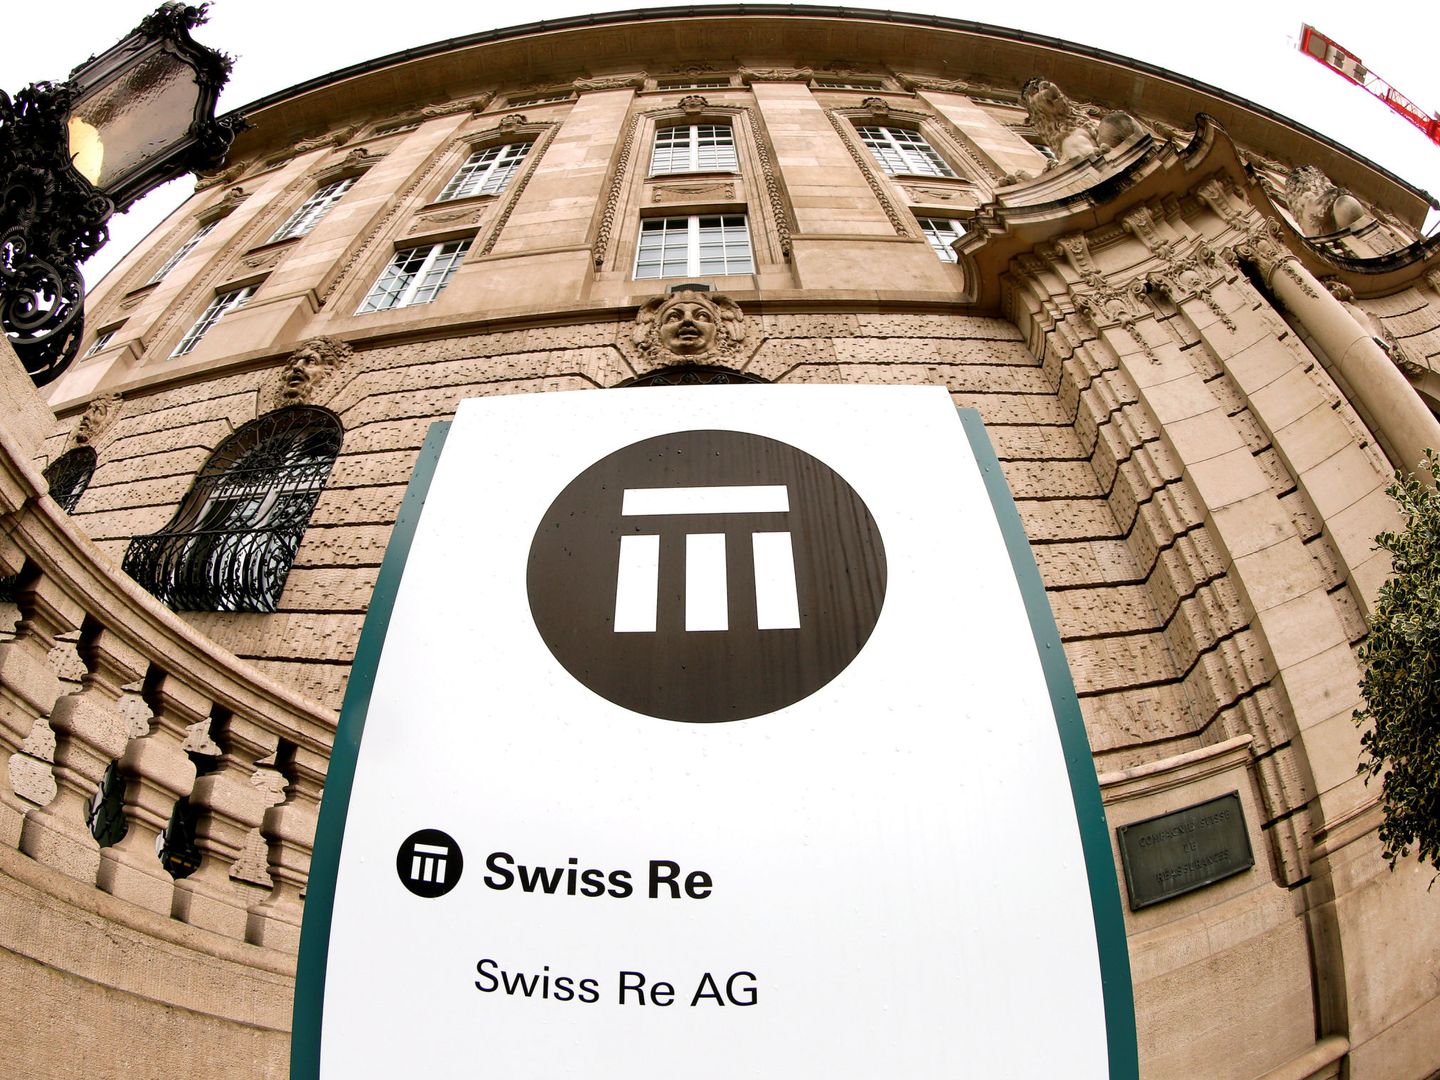 Sede central de Swiss Re en Suiza (REUTERS)